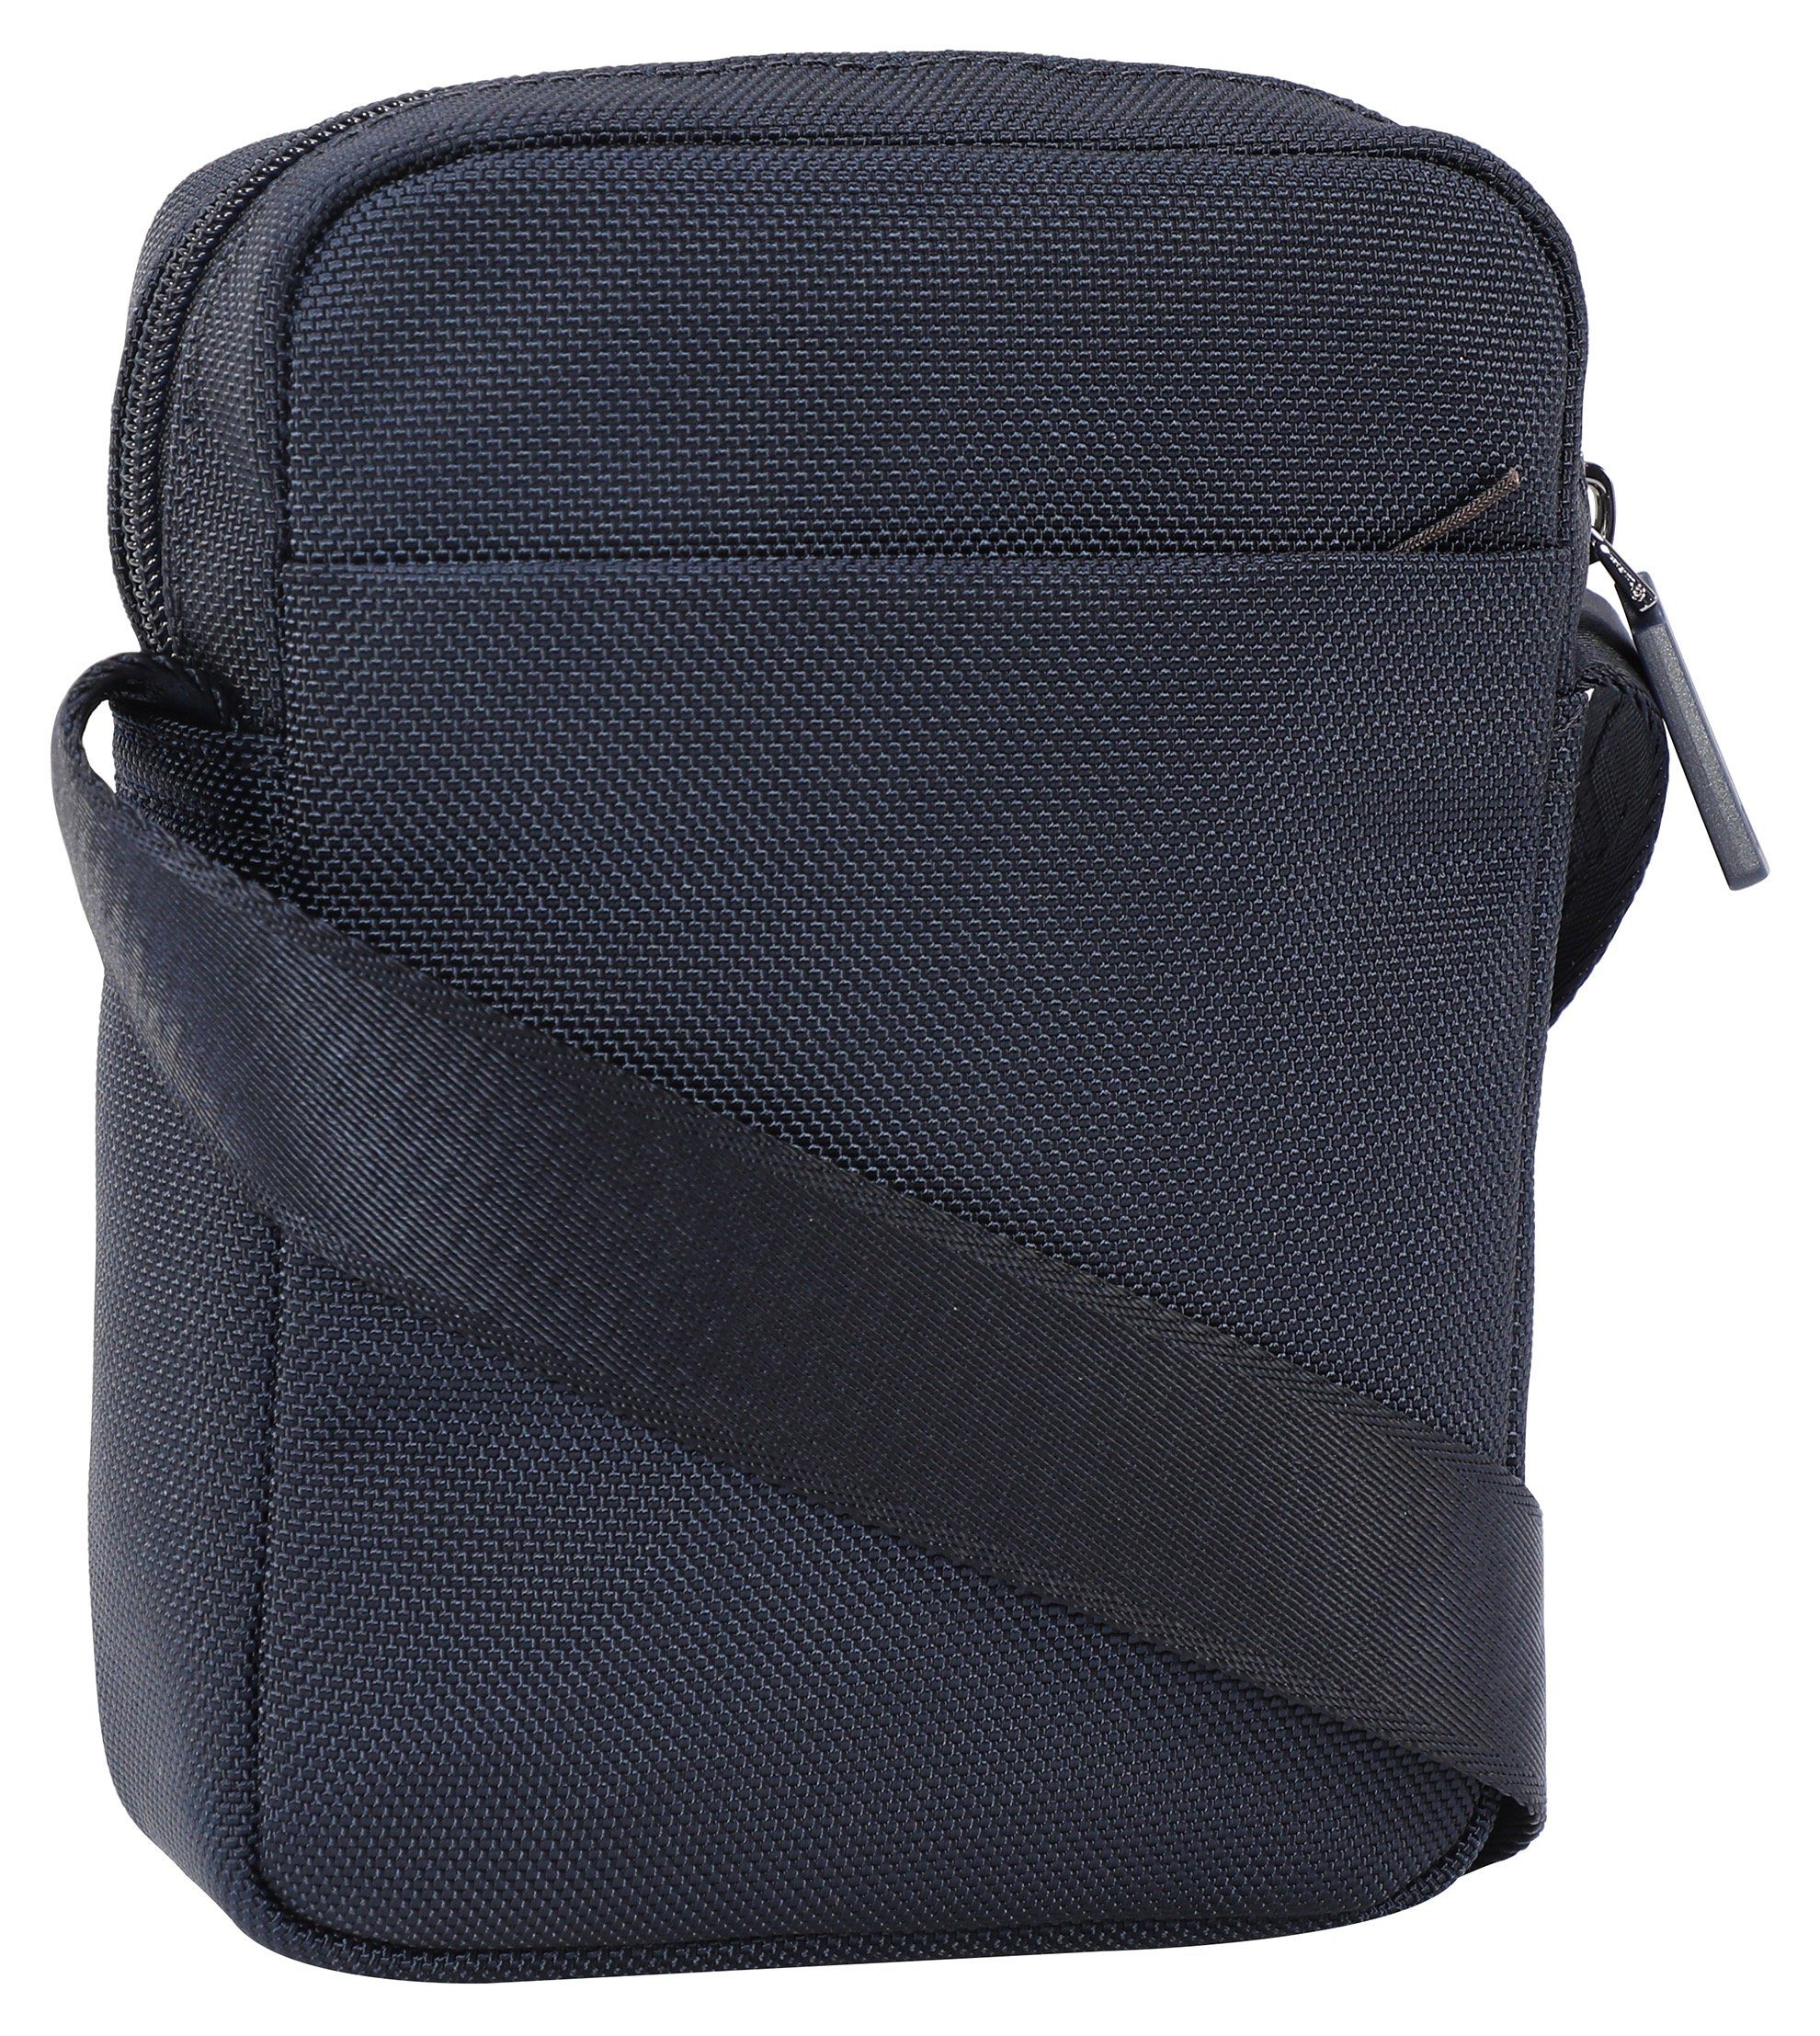 Joop Jeans modica shoulderbag im dunkelblau praktischen rafael xsvz, Design Umhängetasche